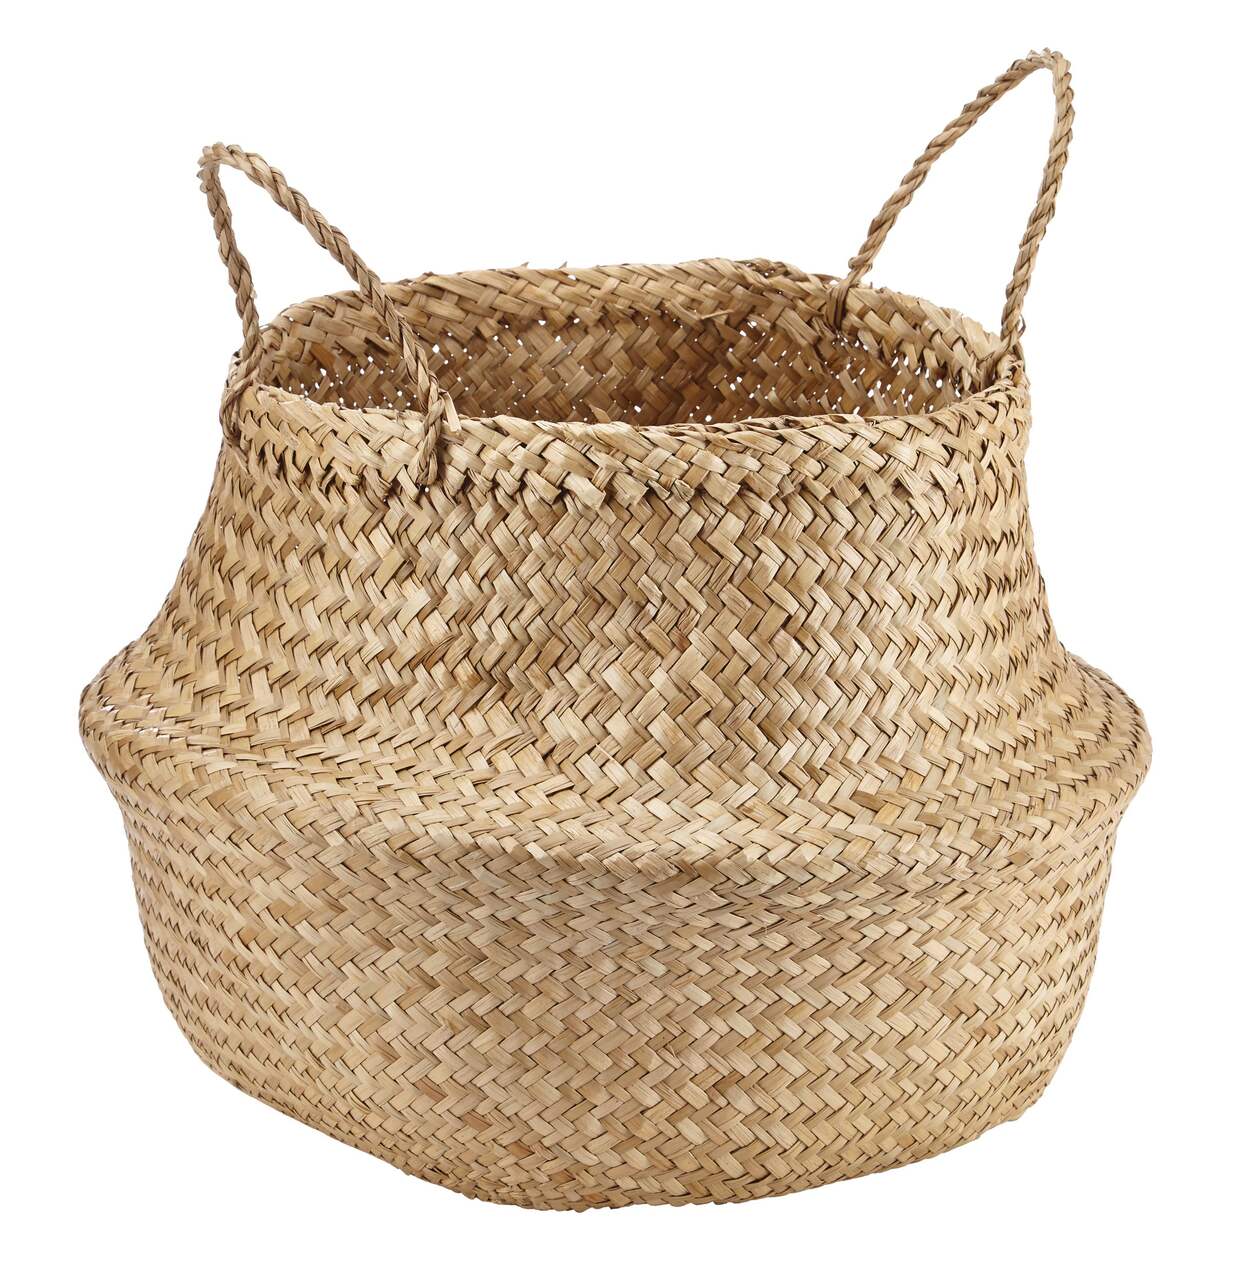 CANVAS Market Round Hand Woven Basket, 15.75 x 17.71-in